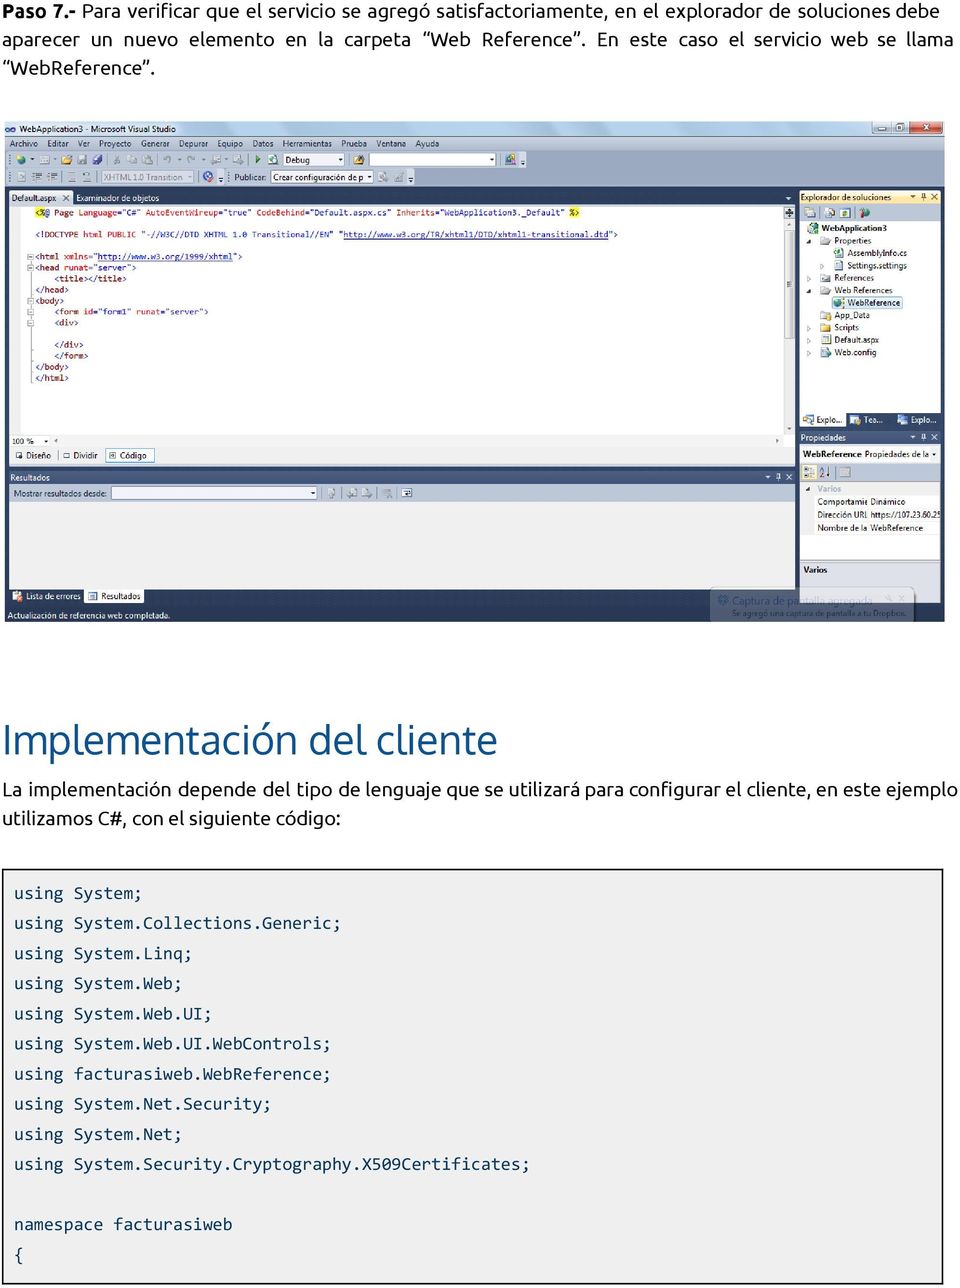 Implementación del cliente La implementación depende del tipo de lenguaje que se utilizará para configurar el cliente, en este ejemplo utilizamos C#, con el siguiente